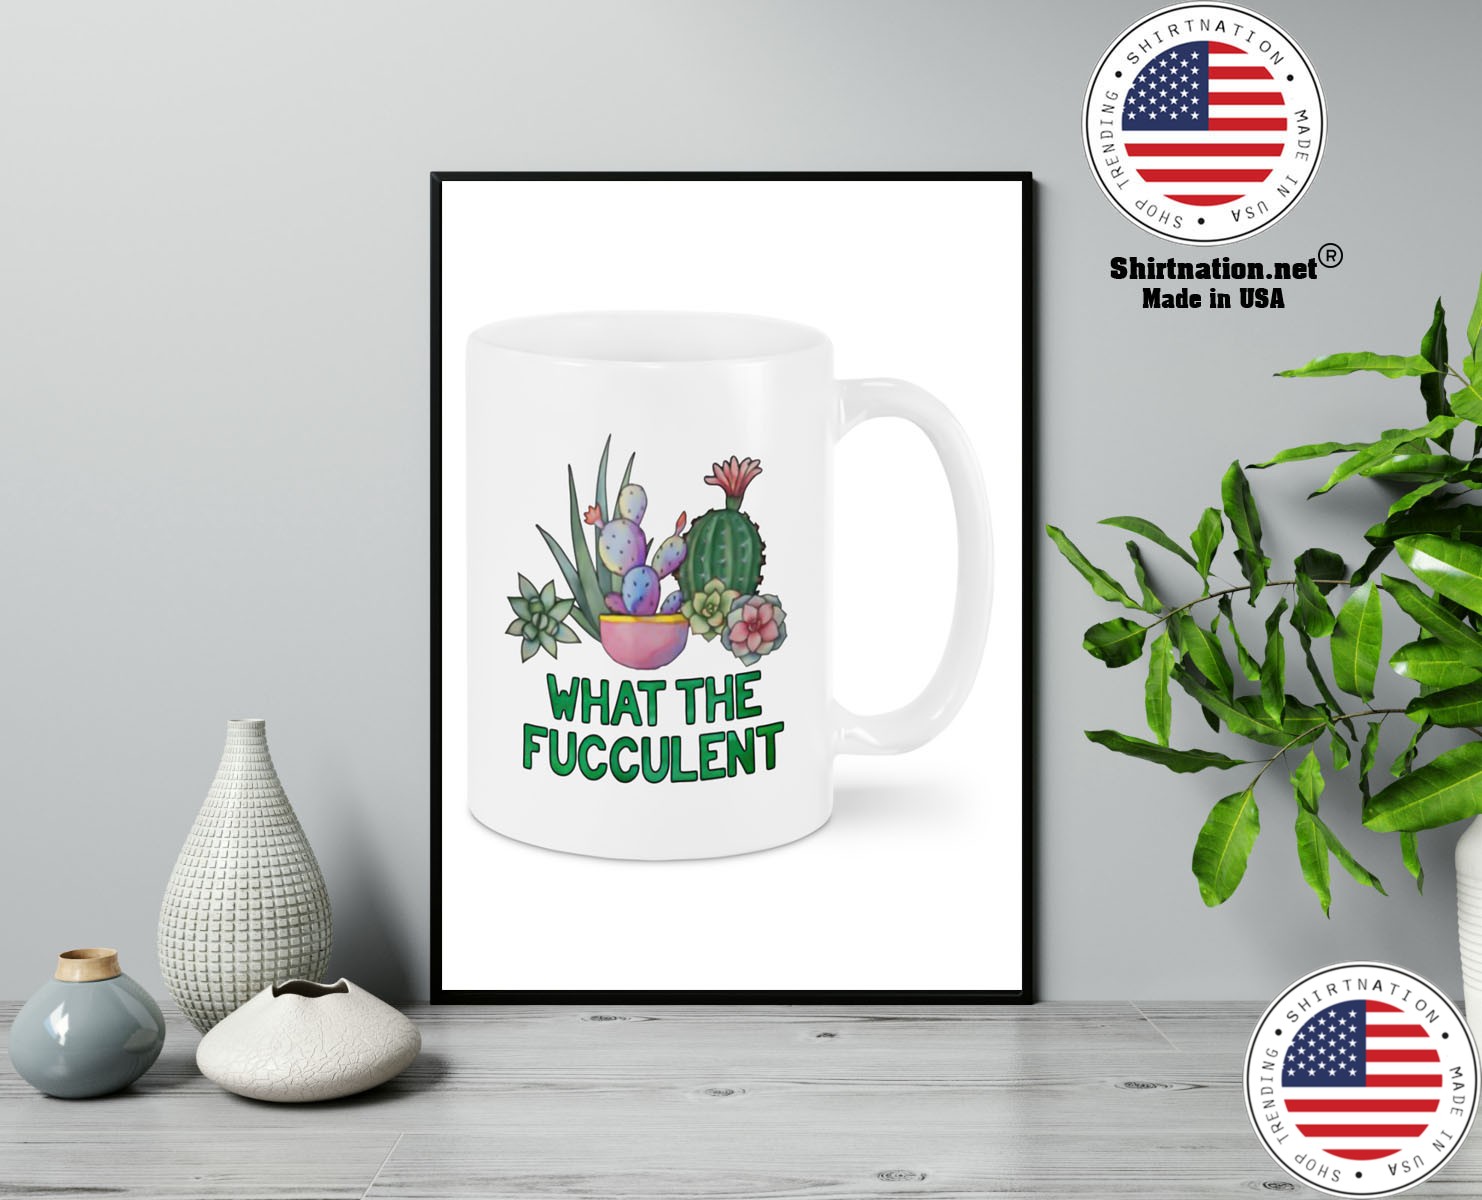 Cactus what the fucculent mug